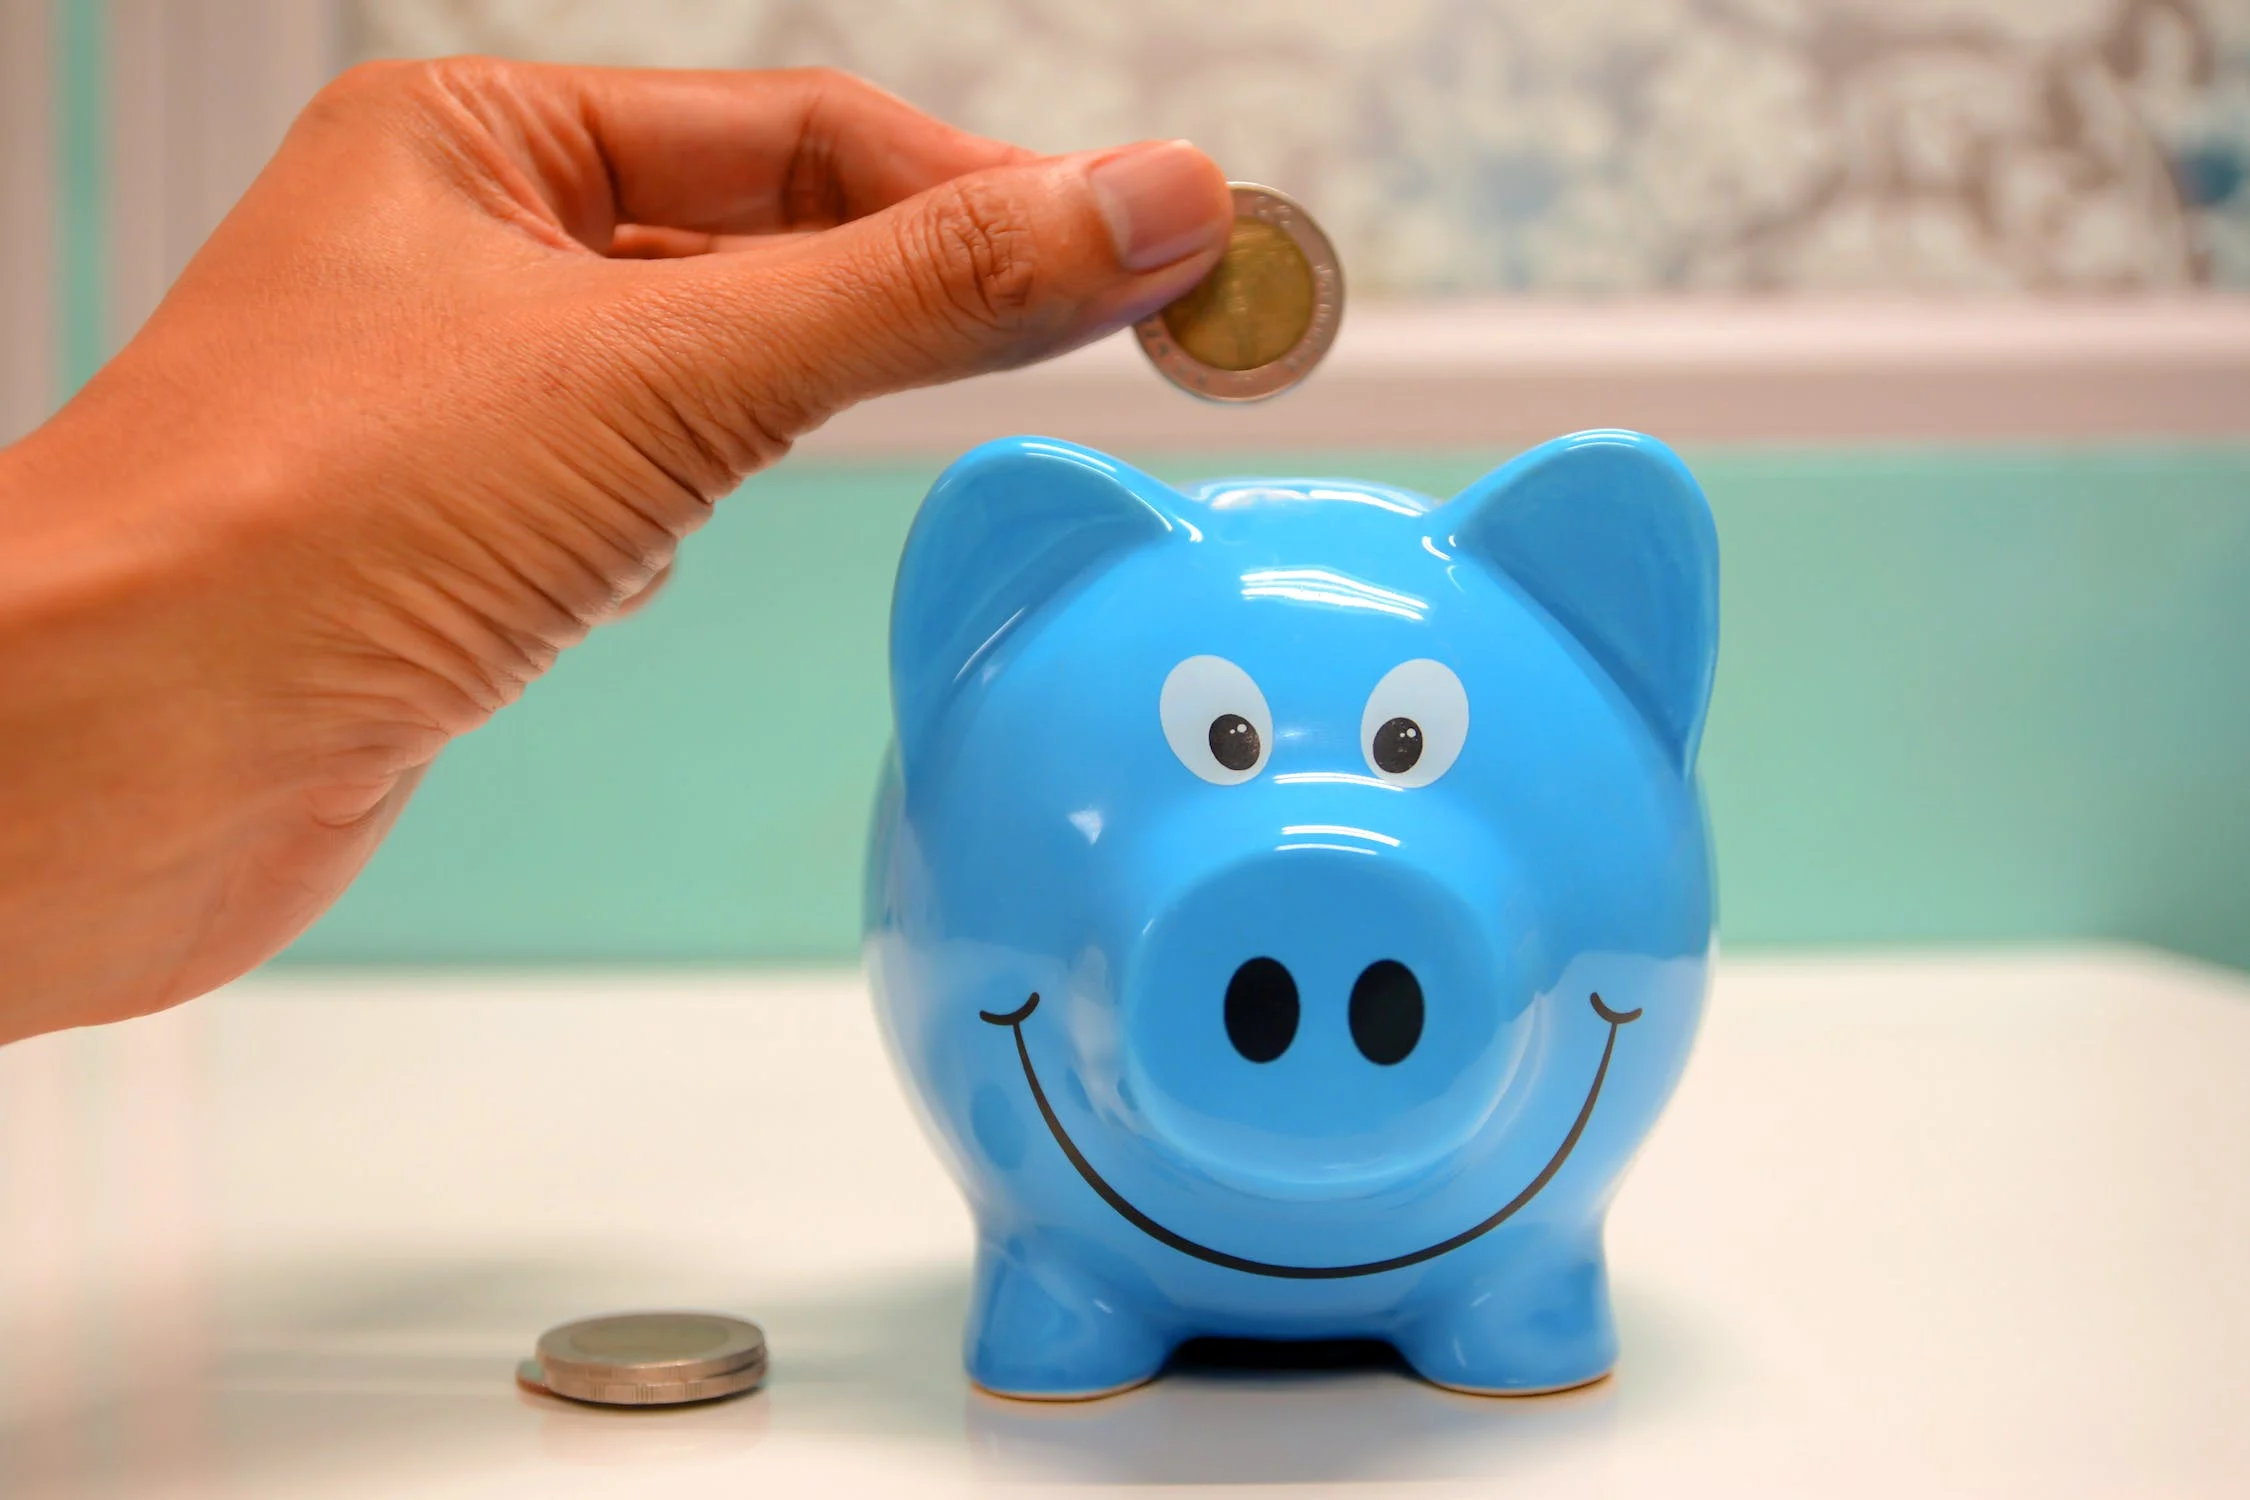 파란색 돼지 저금통에 동전을 넣고 있다.